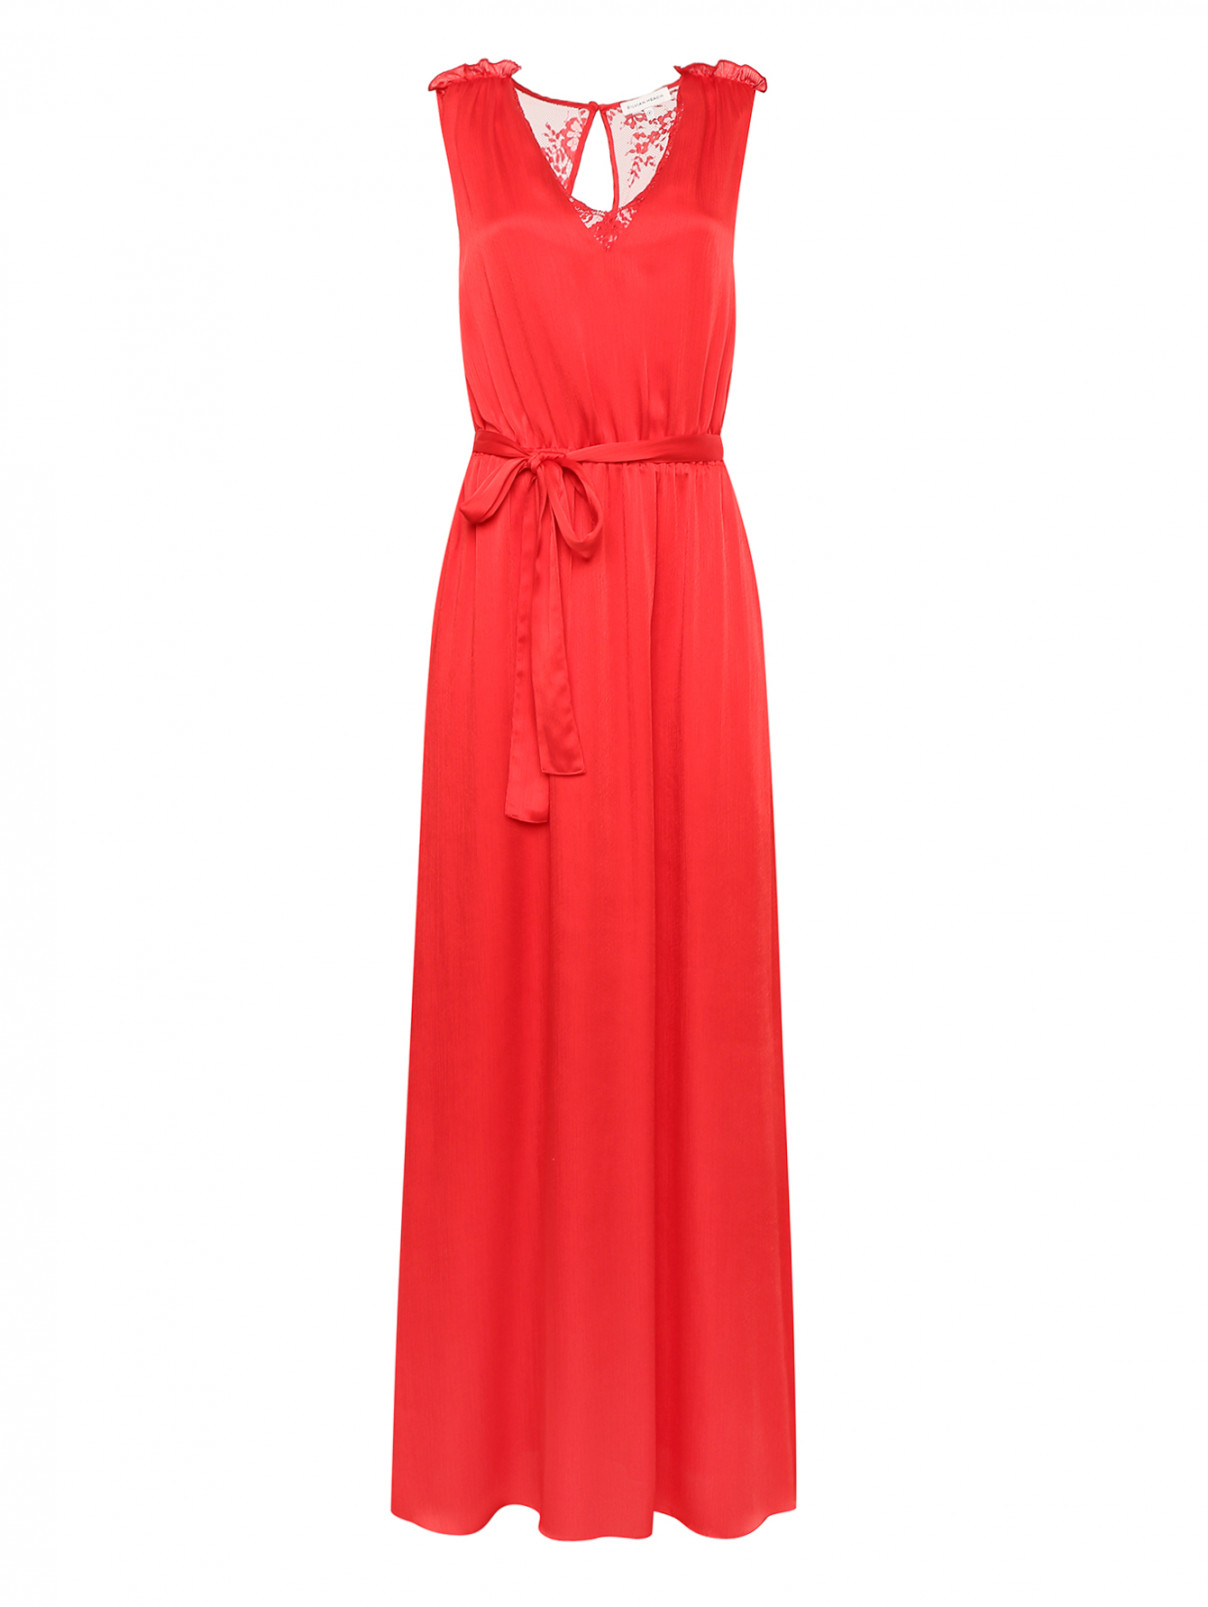 Платье с поясом и вставками из кружева SILVIAN HEACH  –  Общий вид  – Цвет:  Красный